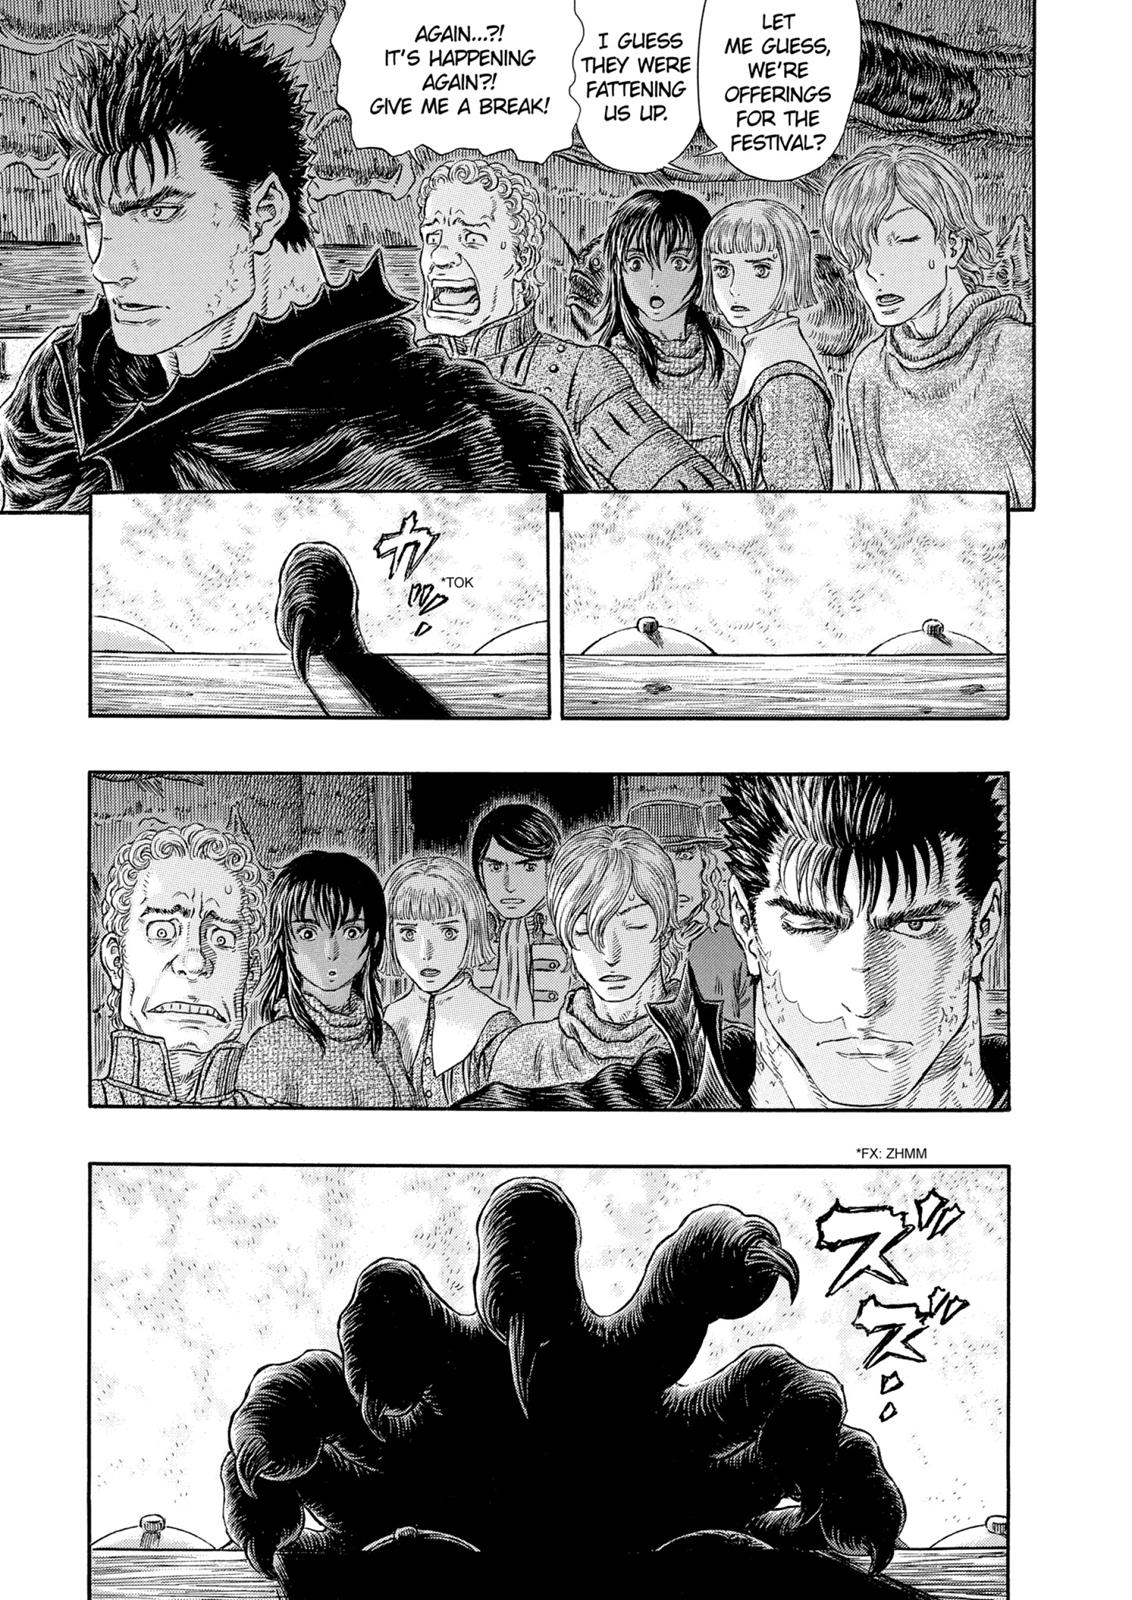 Berserk Manga Chapter 313 image 17